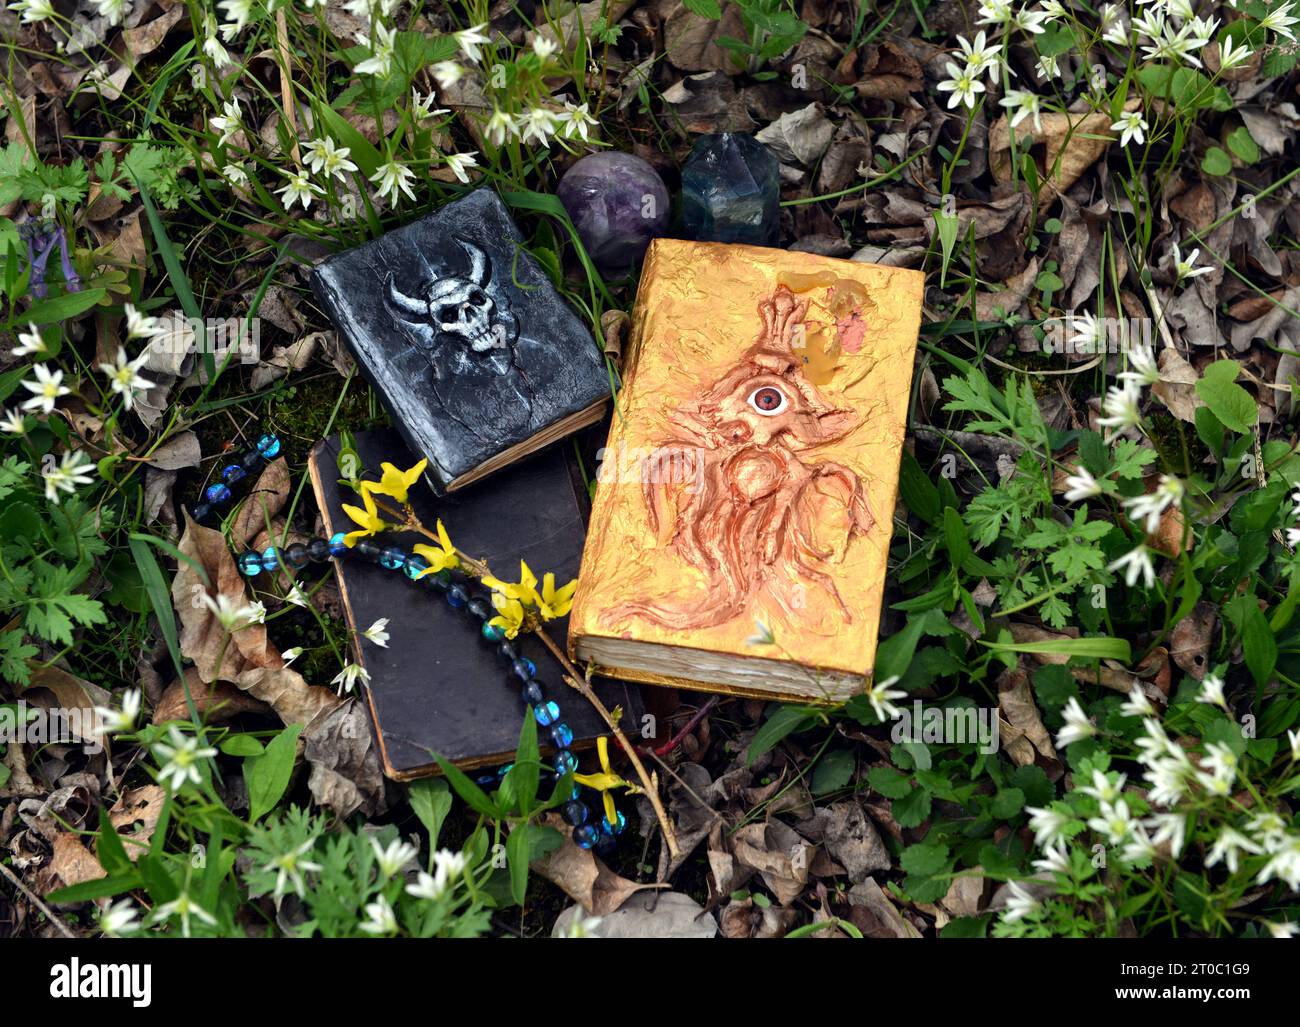 Livres magiques décorés de sorts sur l'herbe dans le jardin. Nature morte occulte, ésotérique et divinatoire. Fond extérieur mystique avec des objets vintage Banque D'Images